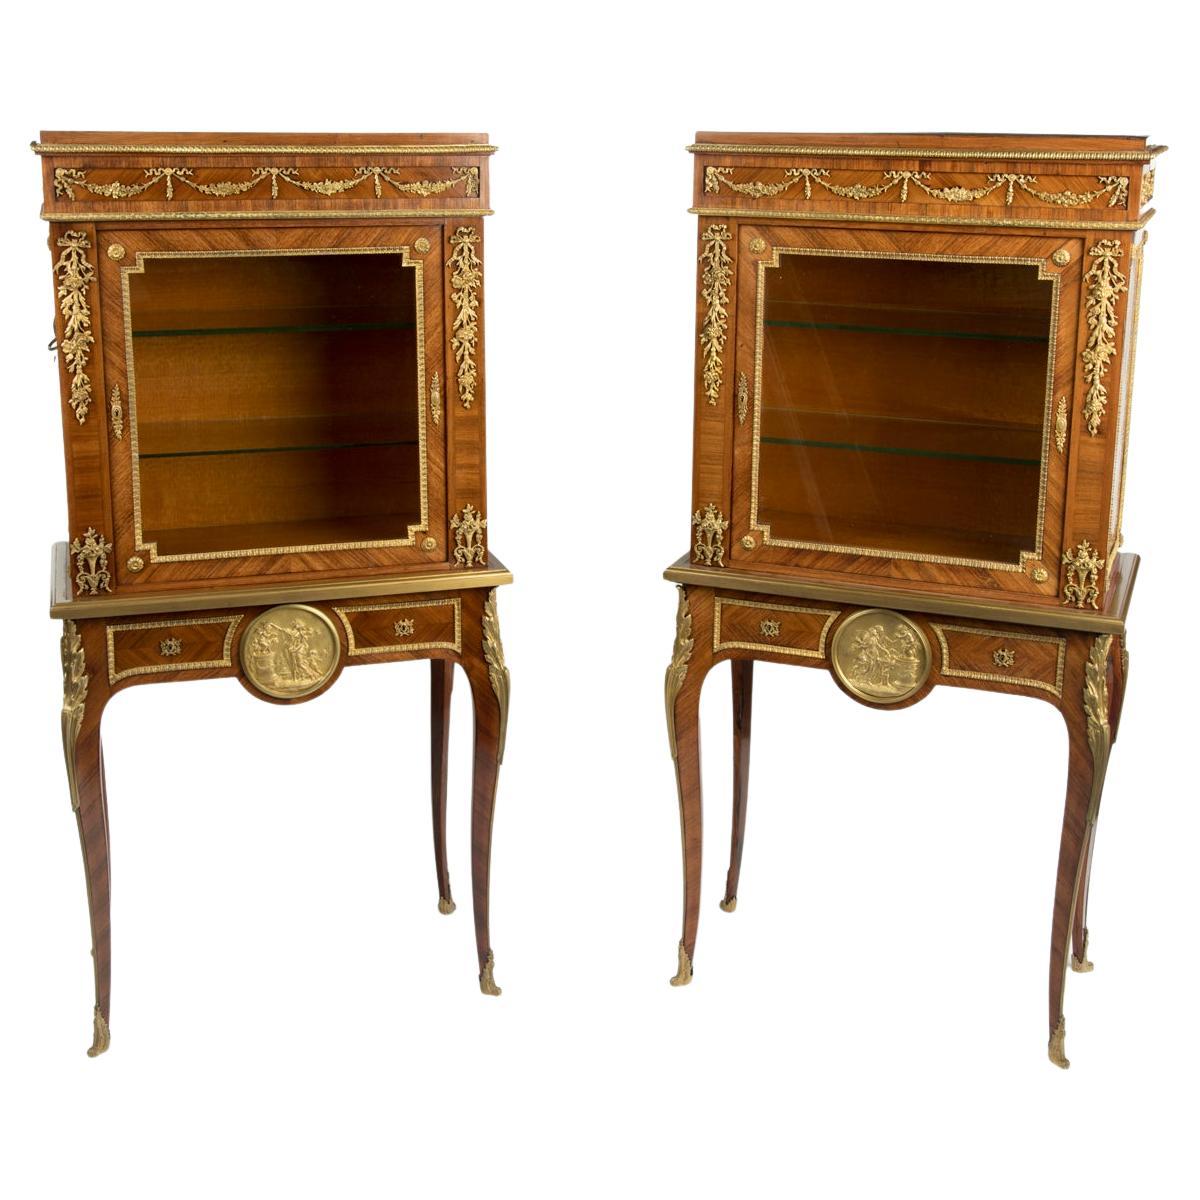 Une paire de petites vitrines Napoléon III en bois de roi sur pieds